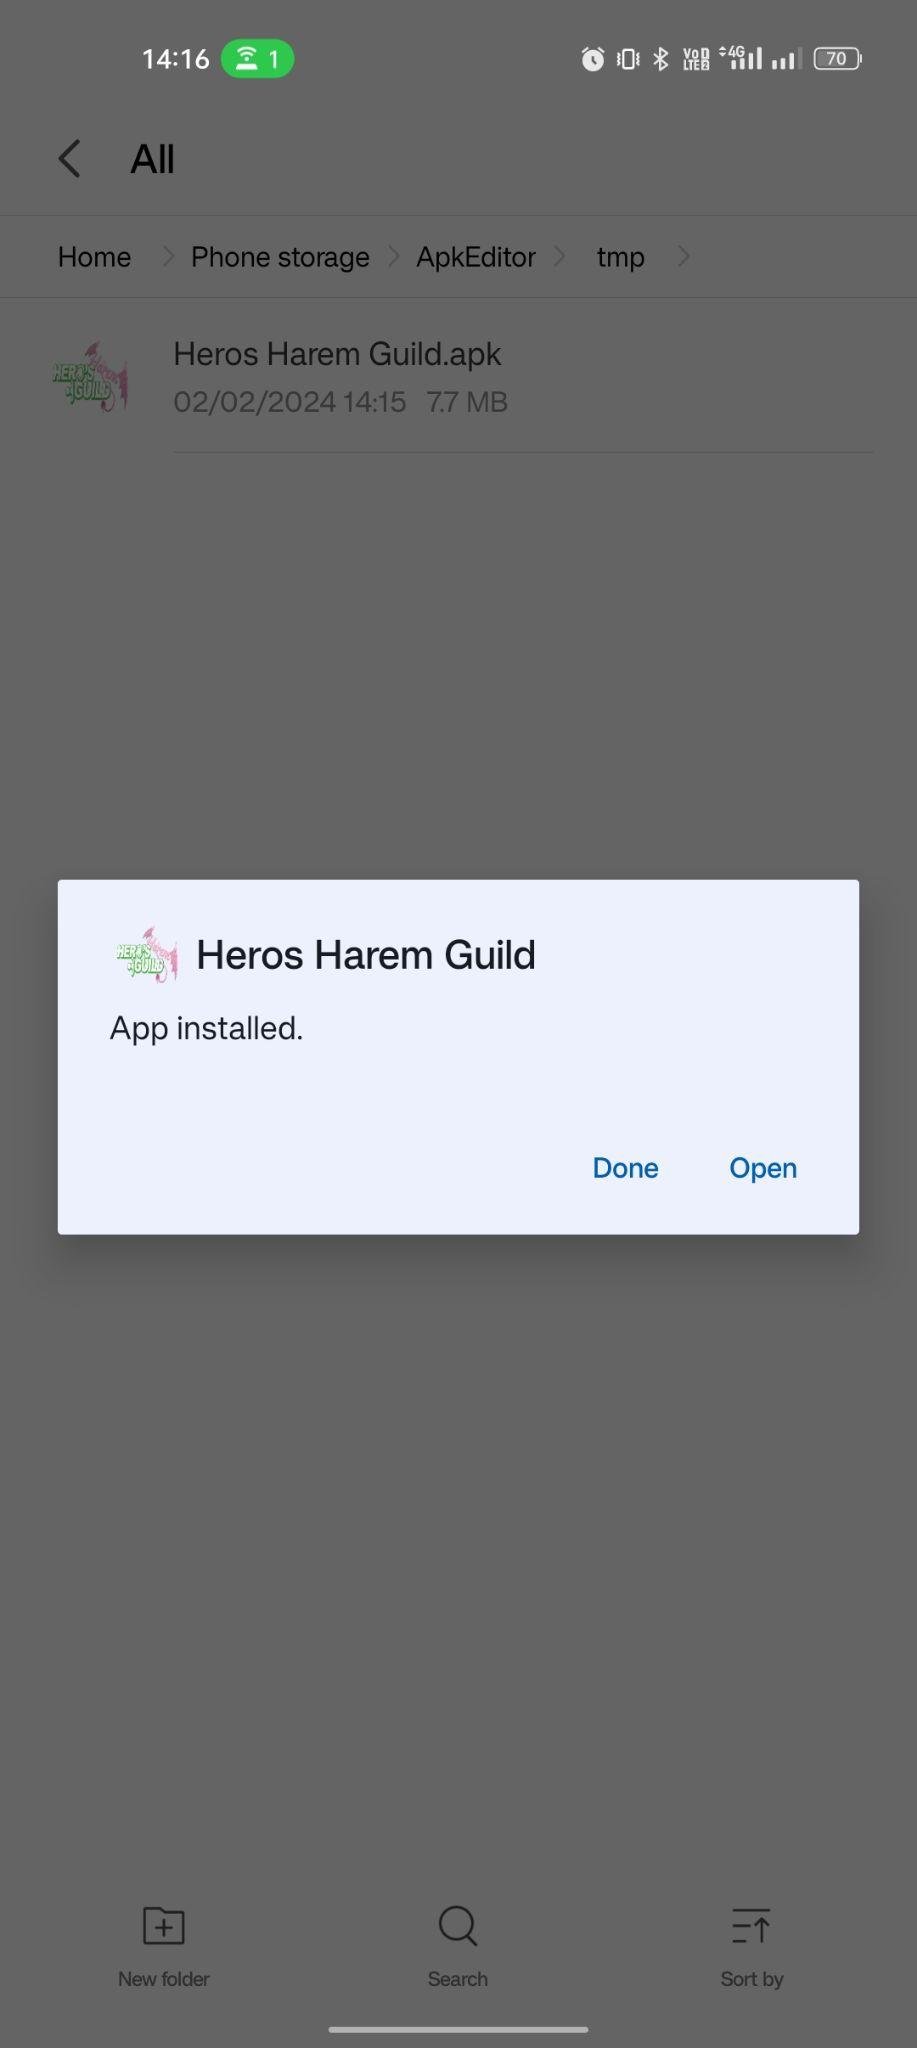 Heros Harem Guild apk installed